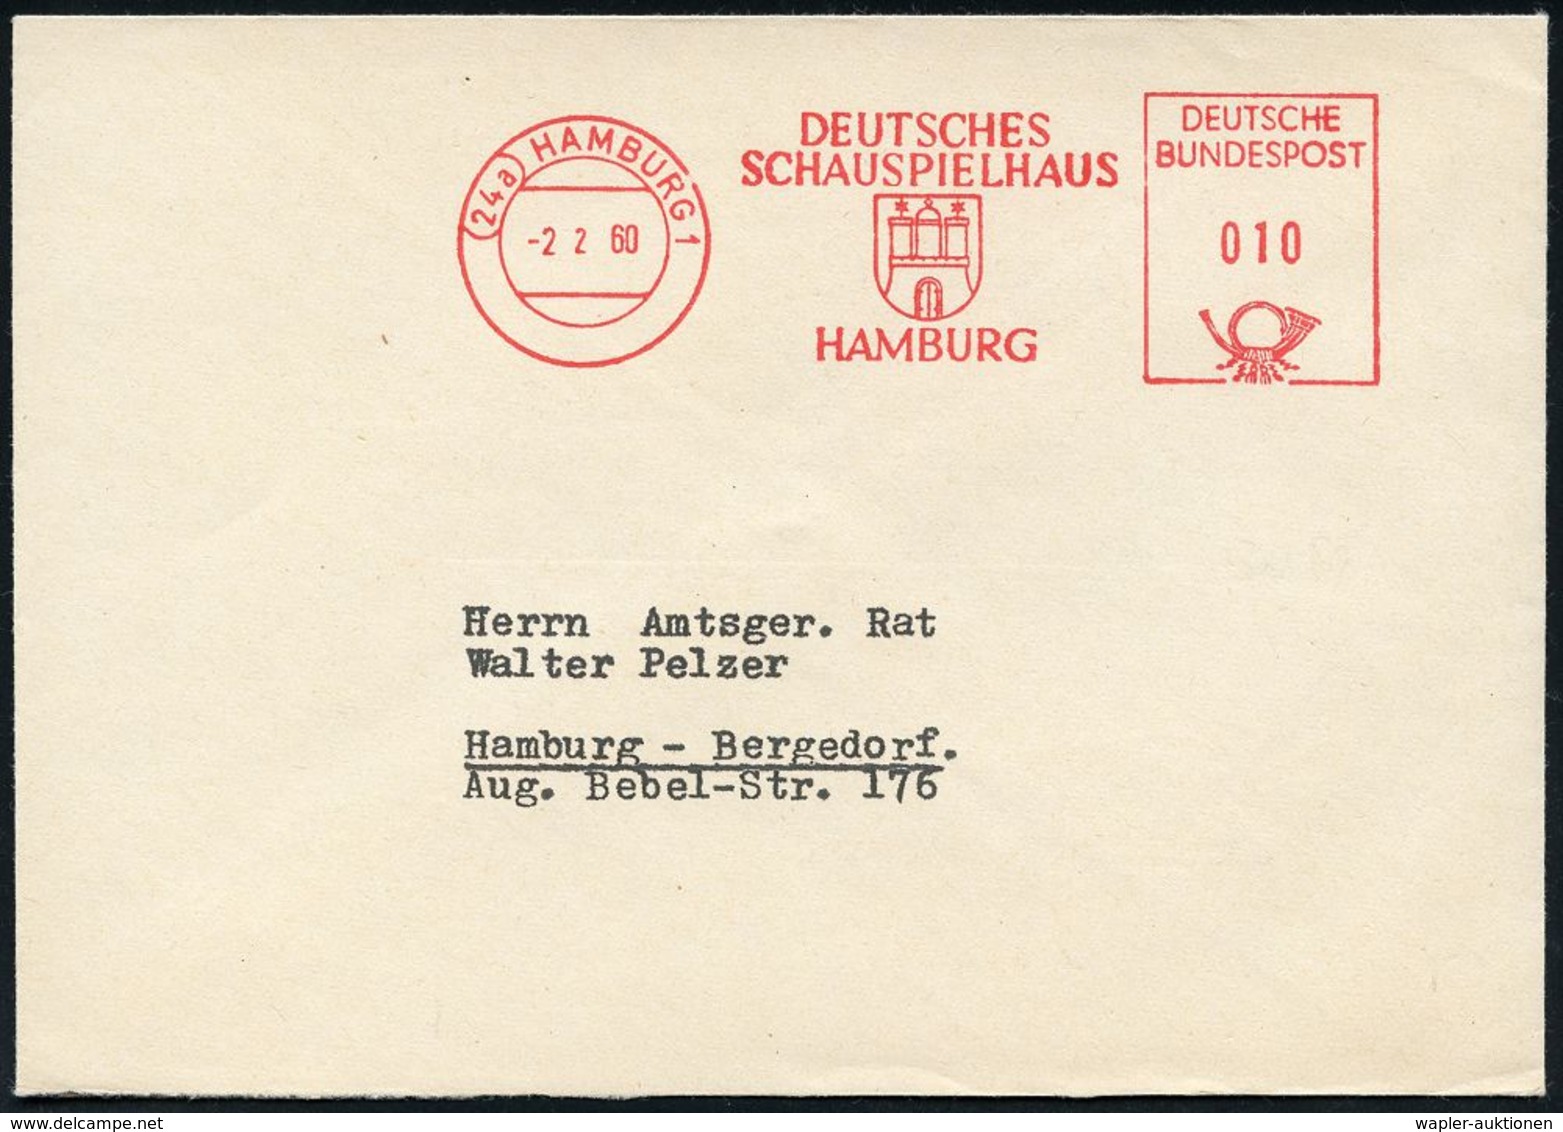 BÜHNE / THEATER / THEATER-FESTIVALS : (22a) HAMBURG 1/ DEUTSCHES/ SCHAUSPIELHAUS 1960 (2.2.) AFS (Stadtwappen) Rs. Abs.- - Teatro